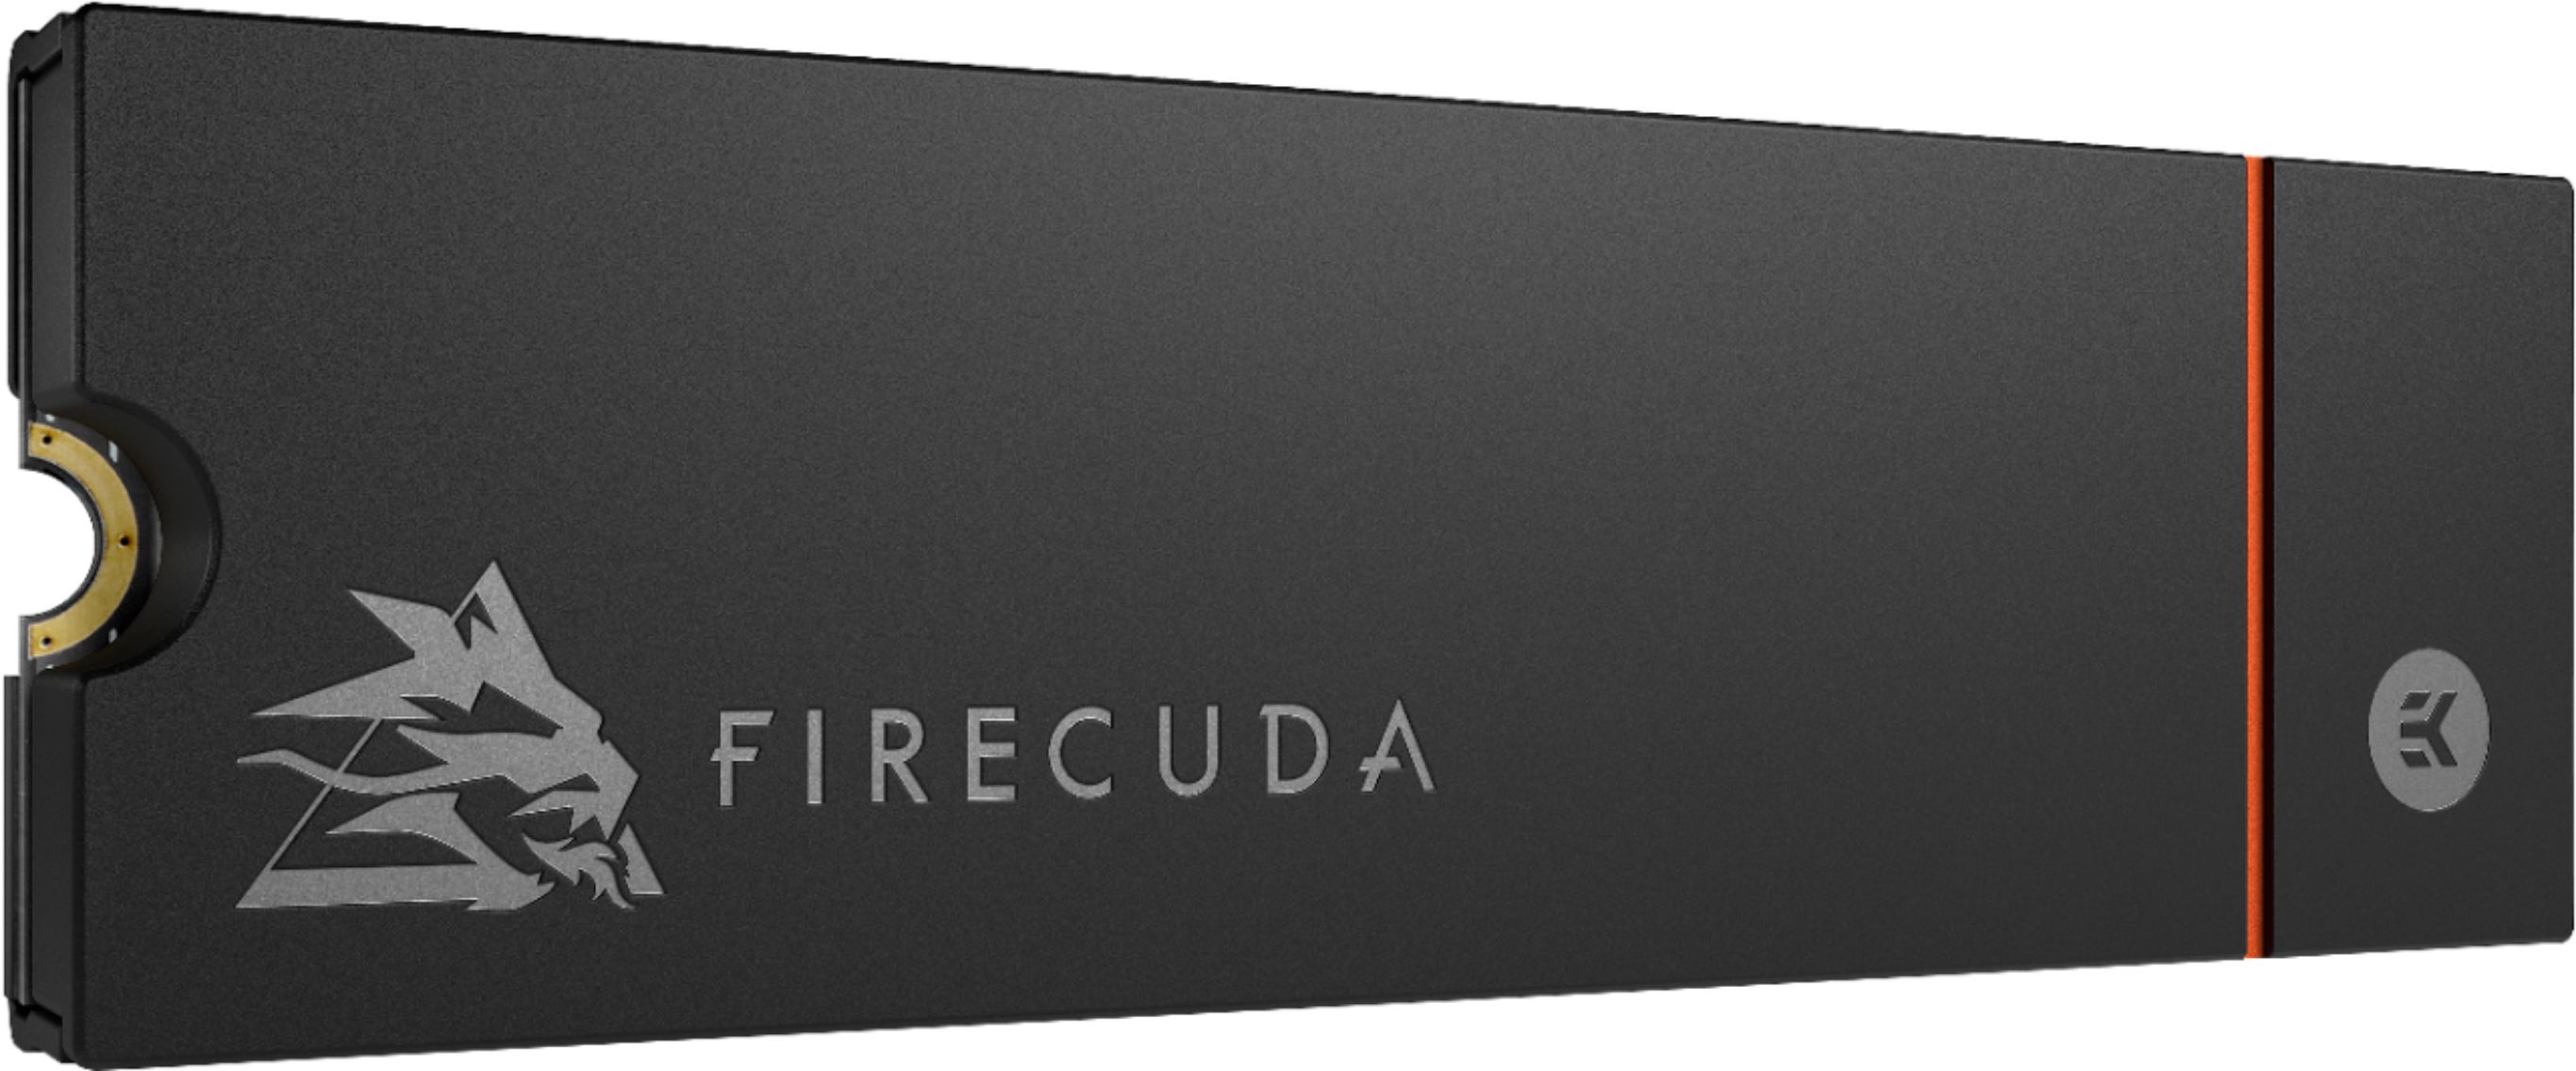 Le SSD Seagate FireCuda 530 1 To avec dissipateur pour PS5 à 149€ (-41